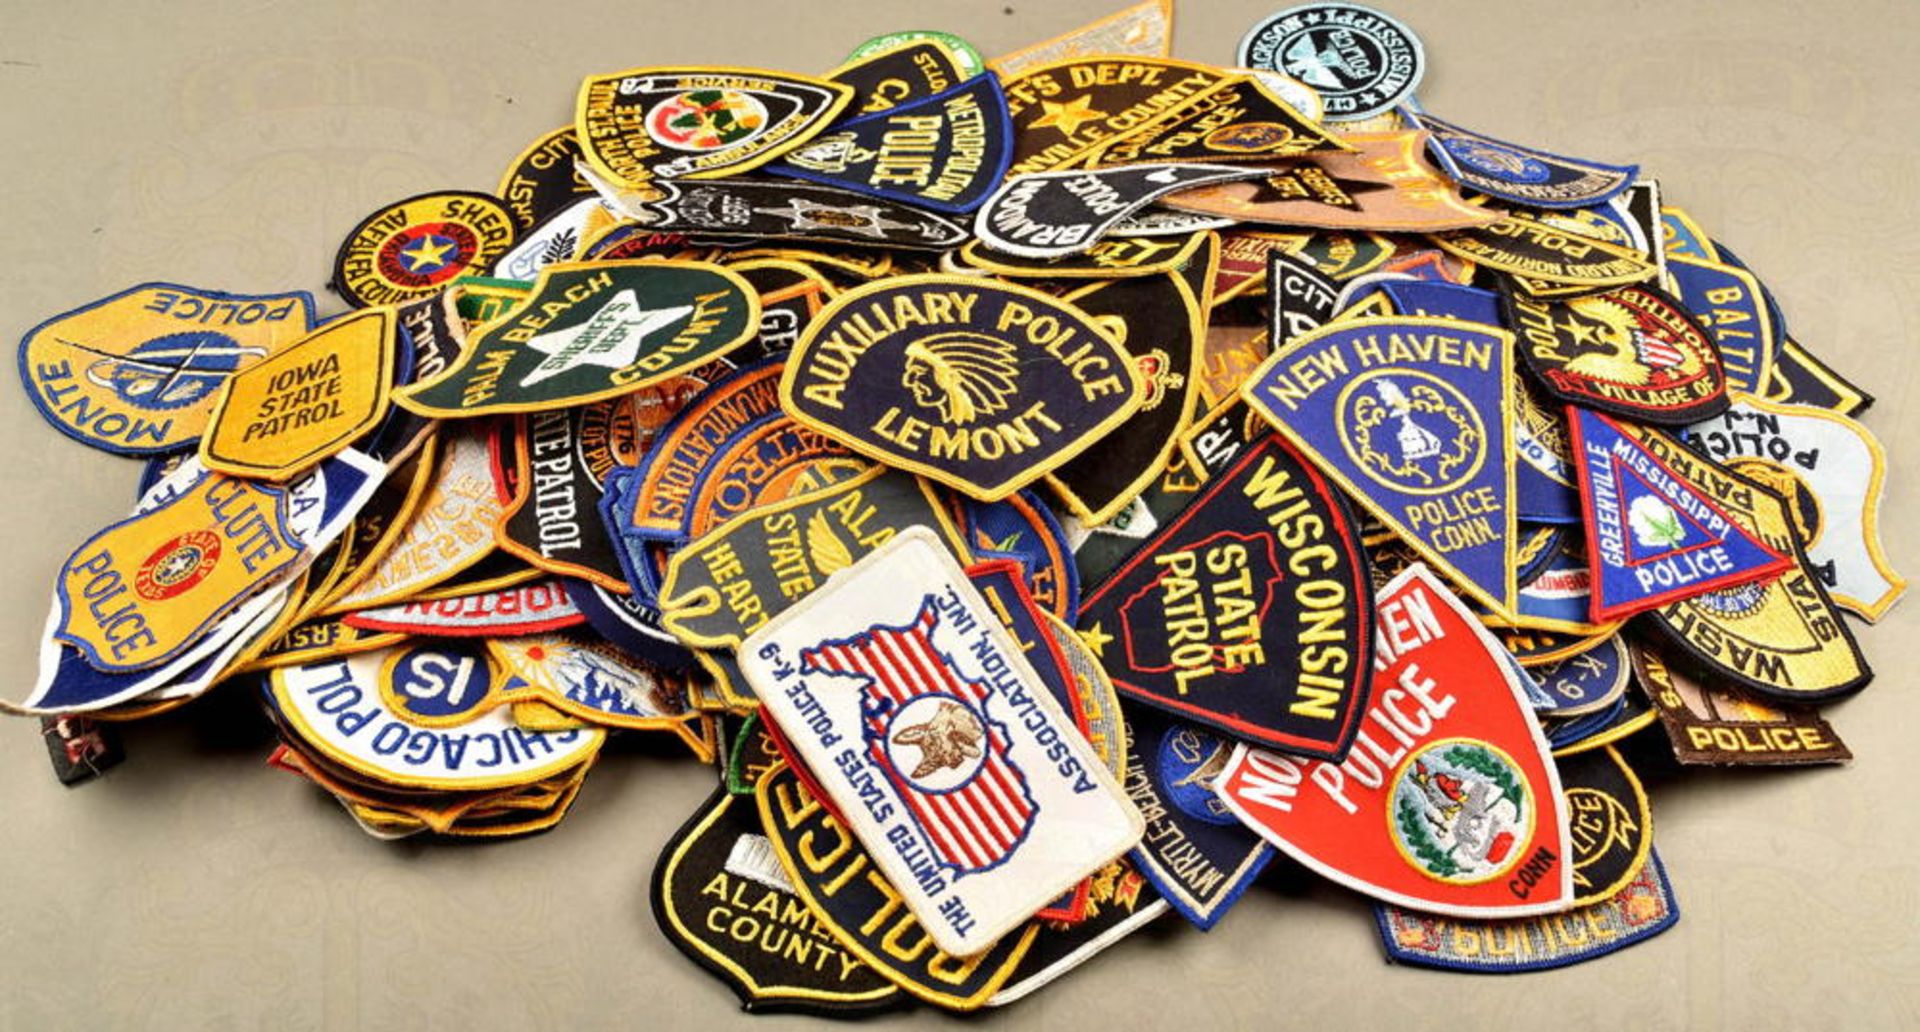 Sammlung Ärmel- und Uniformabzeichen U.S. Polizei